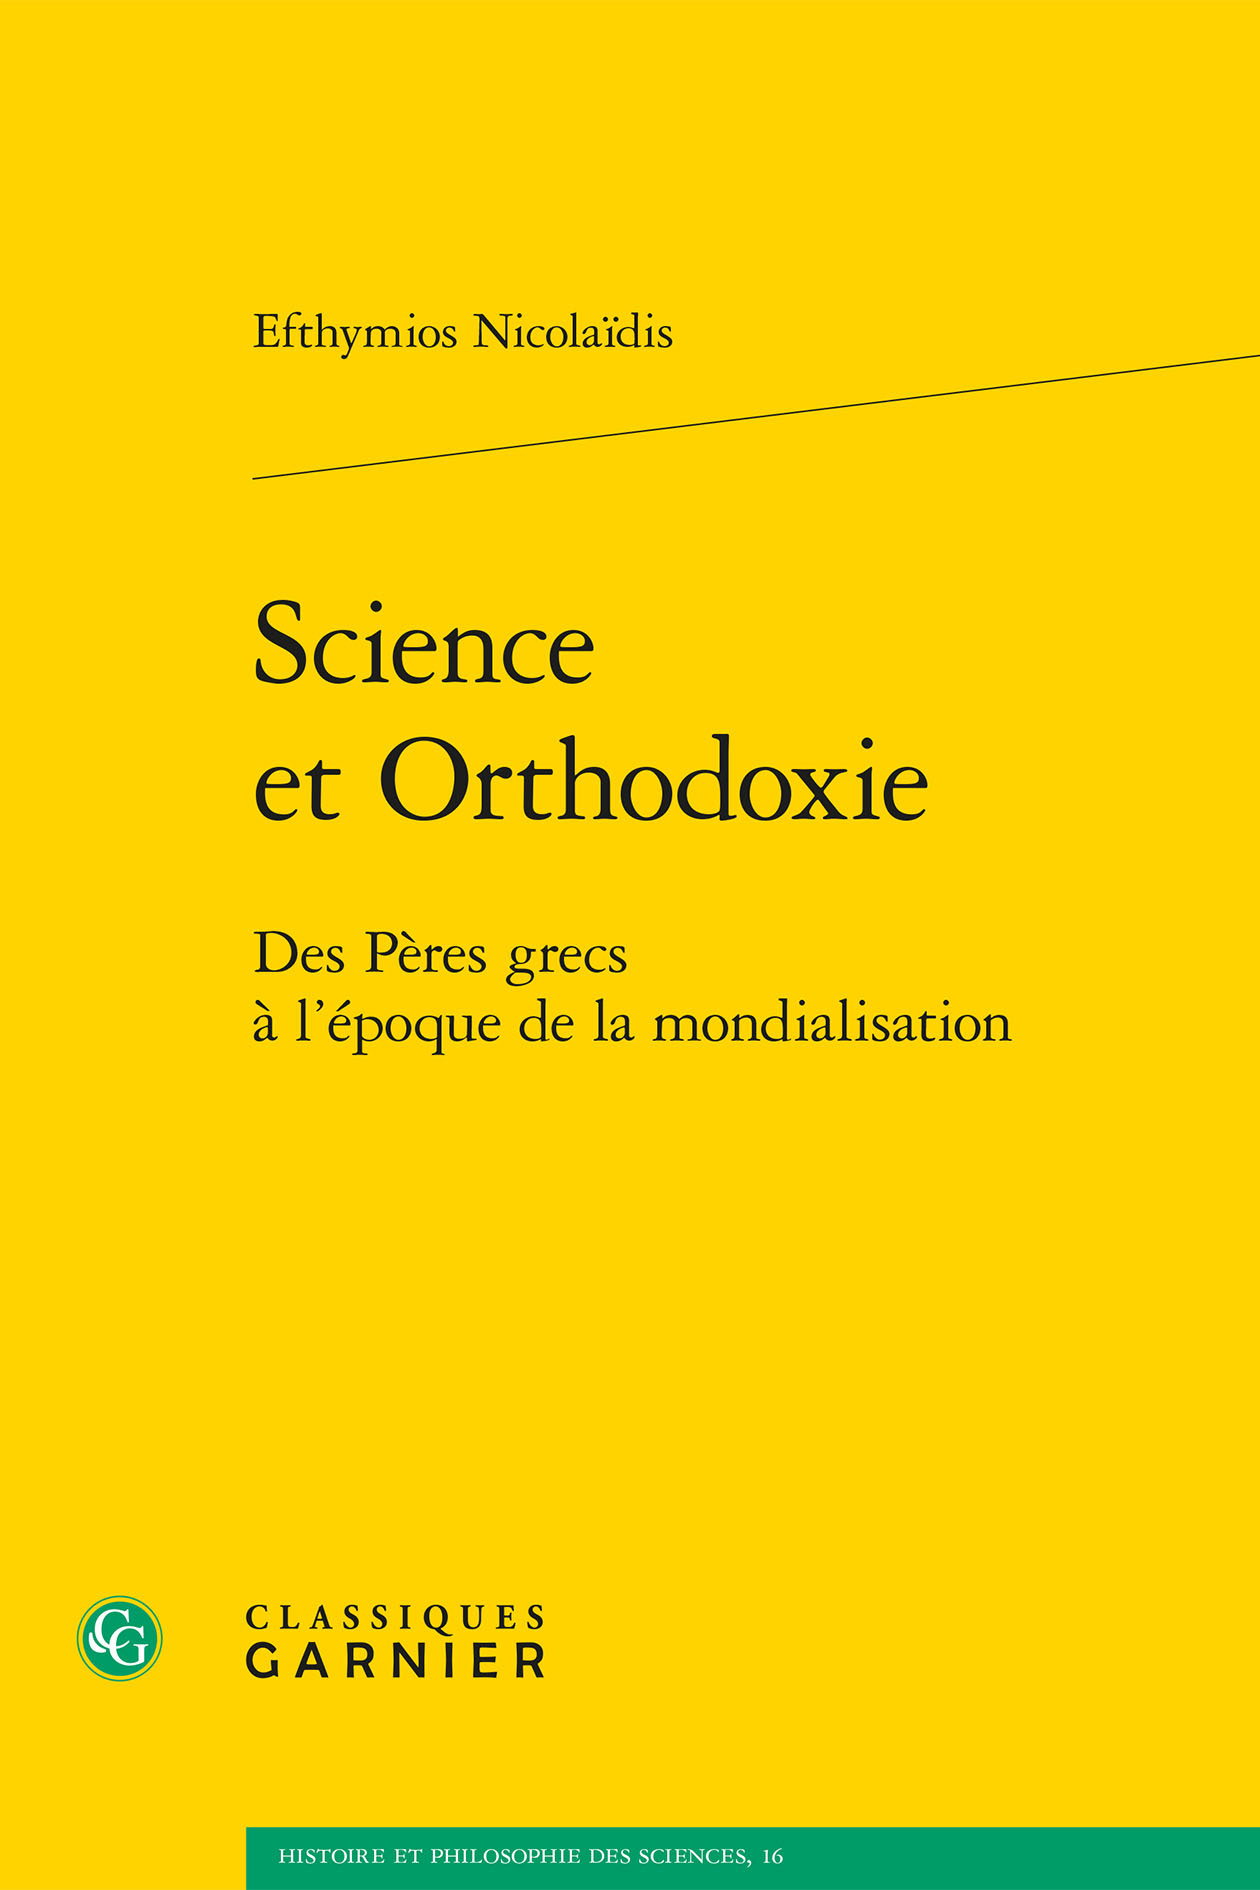 Science et Orthodoxie, Des Pères grecs à l'époque de la mondialisation (9782406068679-front-cover)